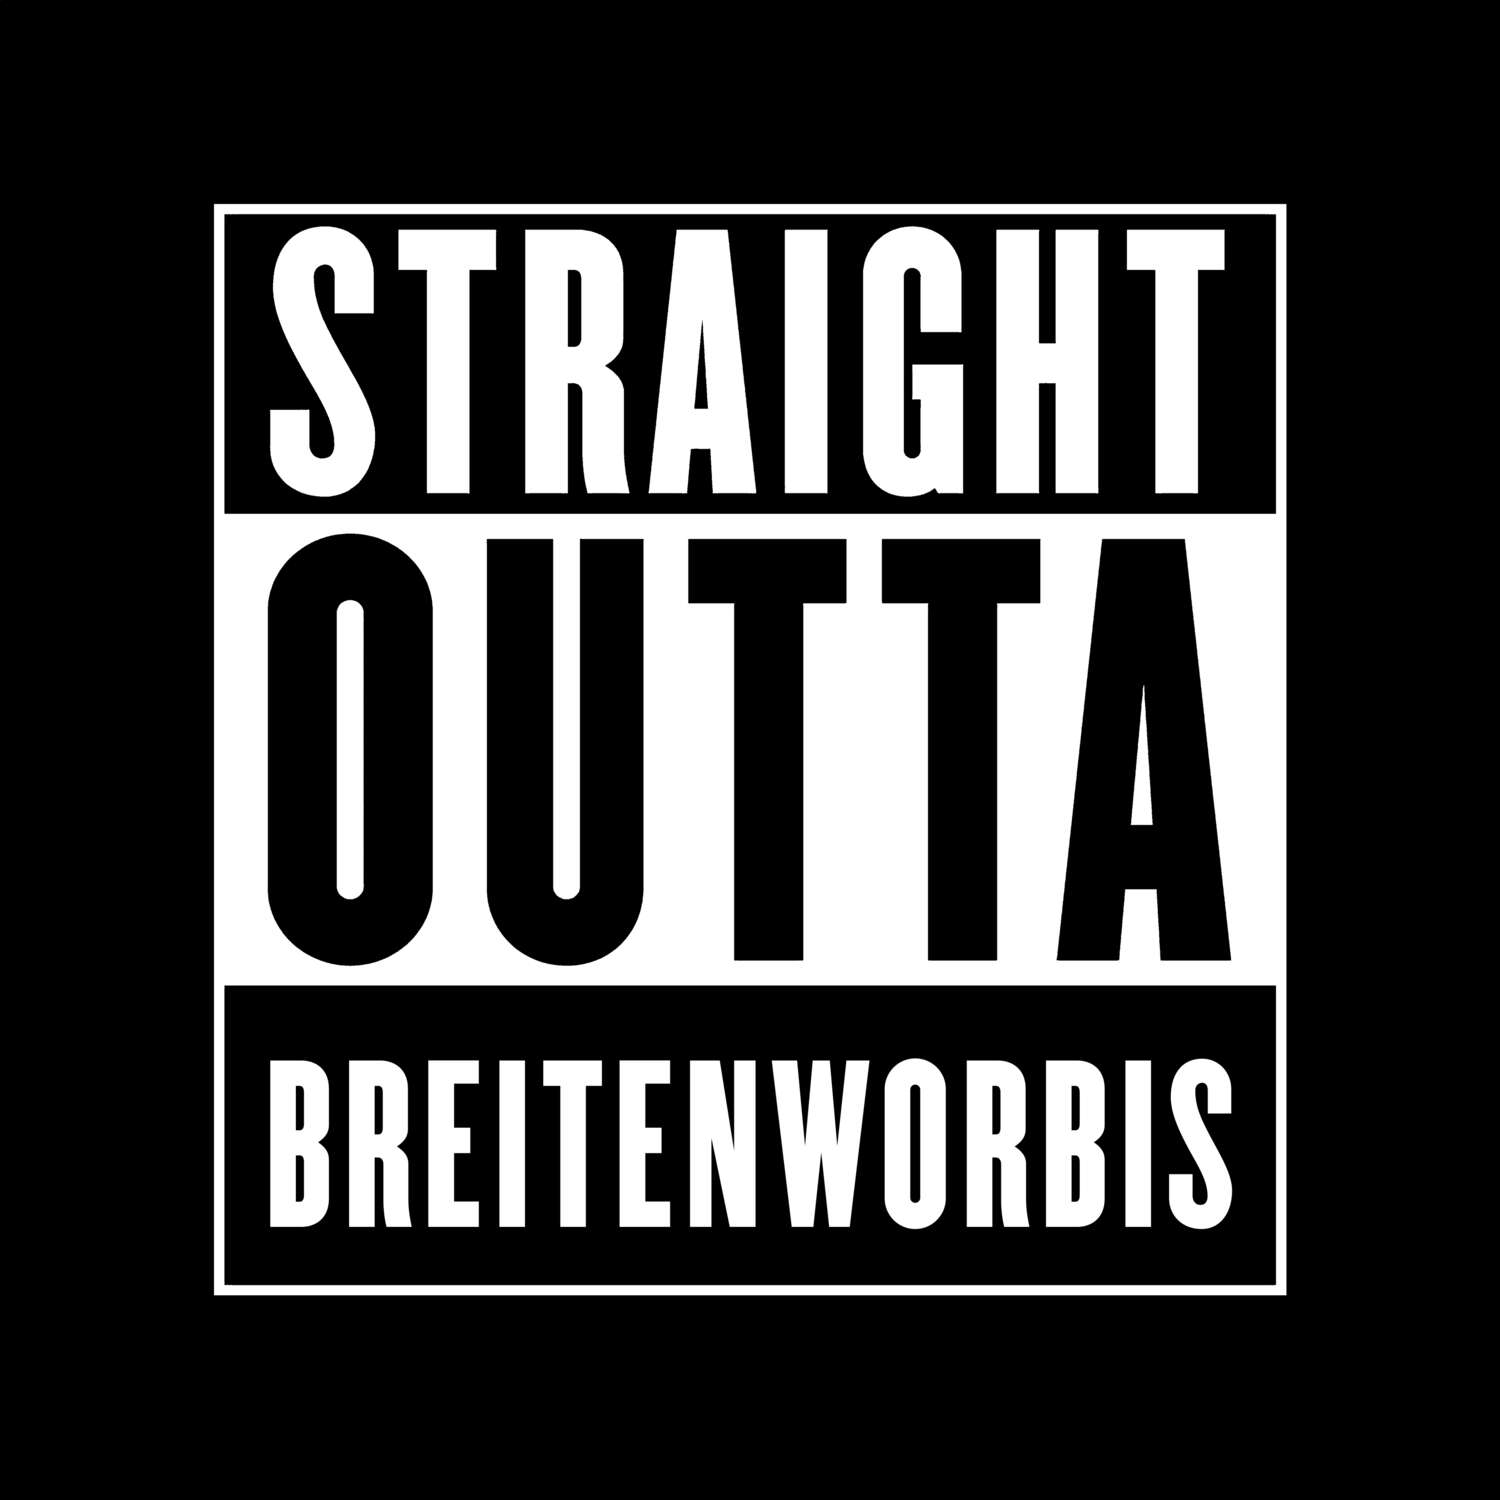 Breitenworbis T-Shirt »Straight Outta«